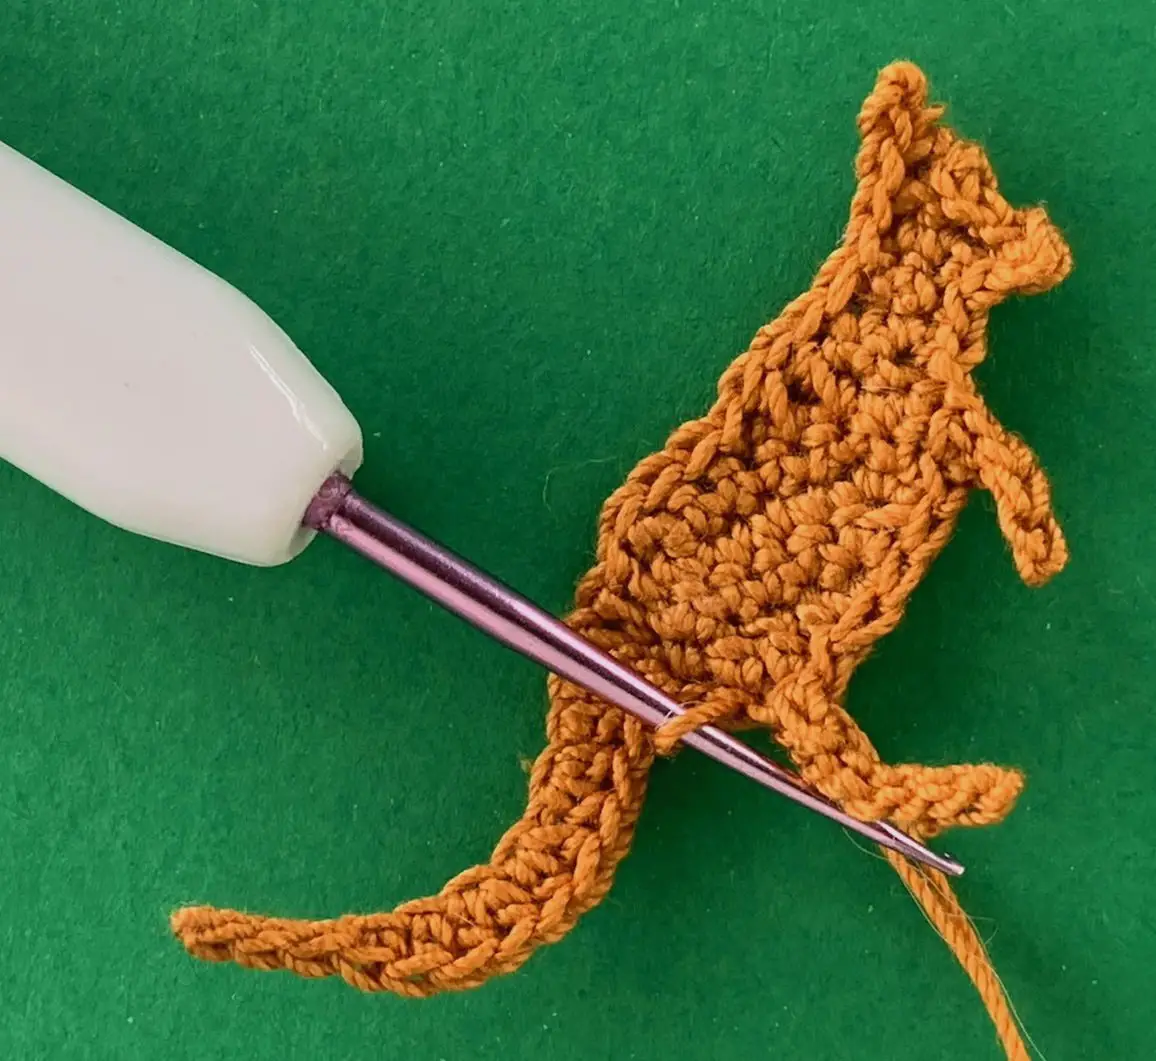 Crochet reverse kangaroo 2 ply joining for back leg